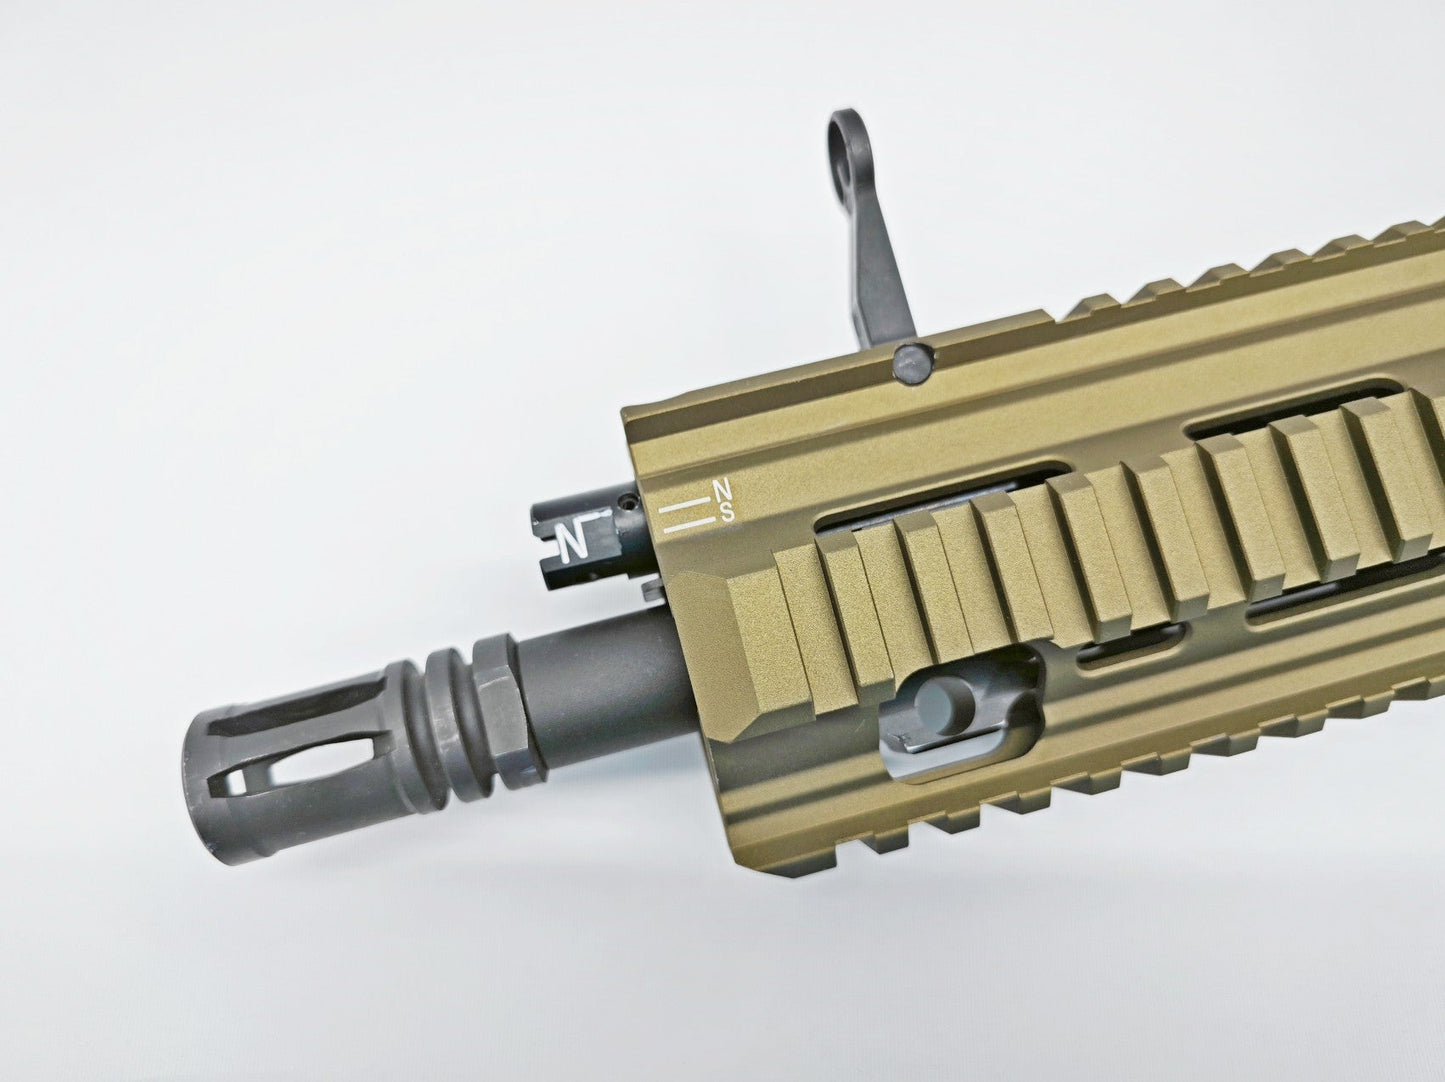 
                  
                    تعديل البنادق A5 HK-416 المرحلة 2 بندقية GBB (طلب مسبق)
                  
                